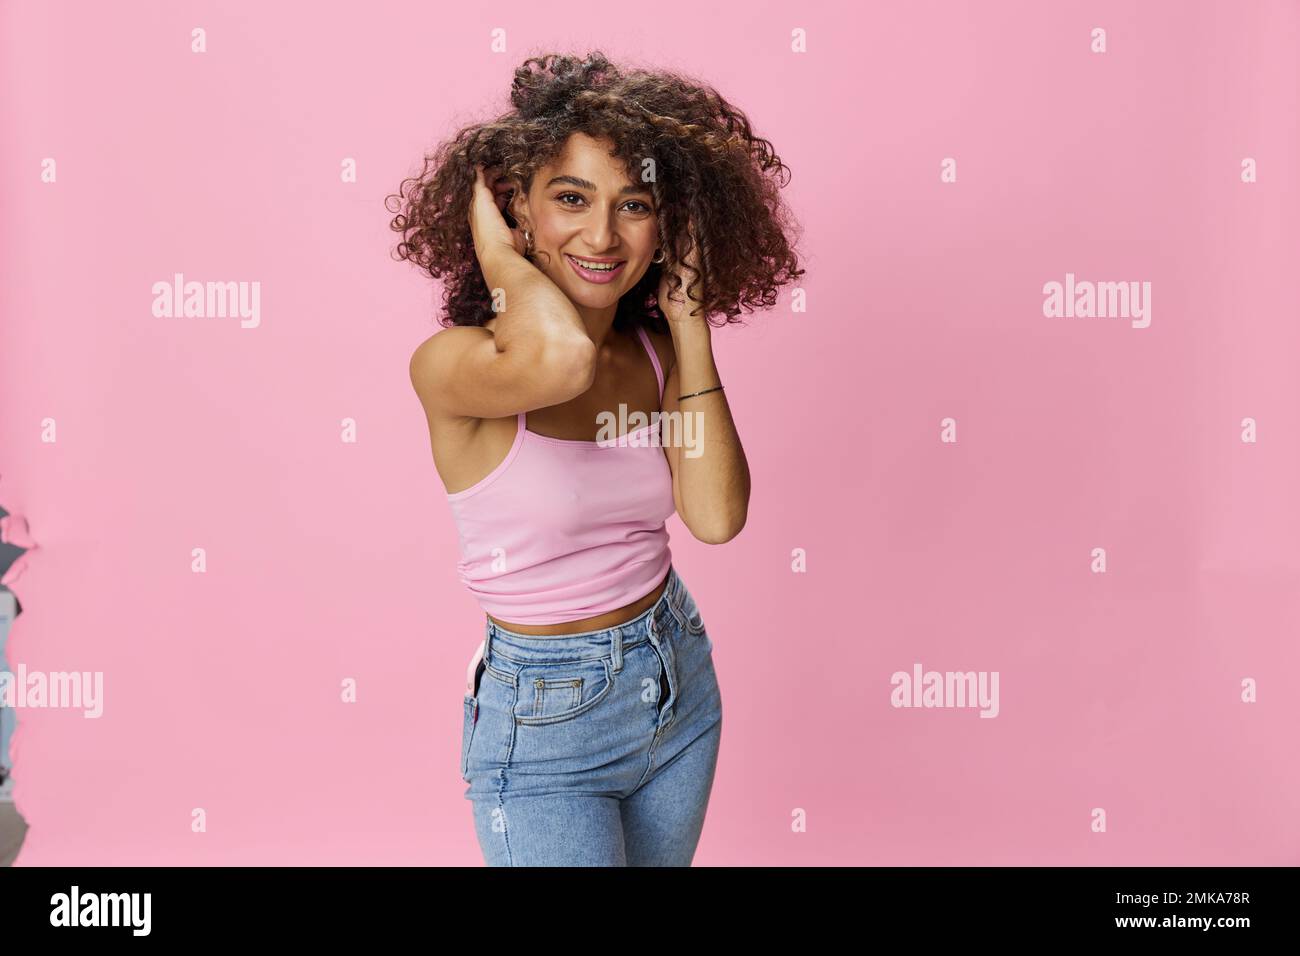 Femme avec le curly afro cheveux modèle pose sur un fond rose dans un T-shirt rose, libre mouvement et danse, regarder dans la caméra, sourire avec des dents et Banque D'Images